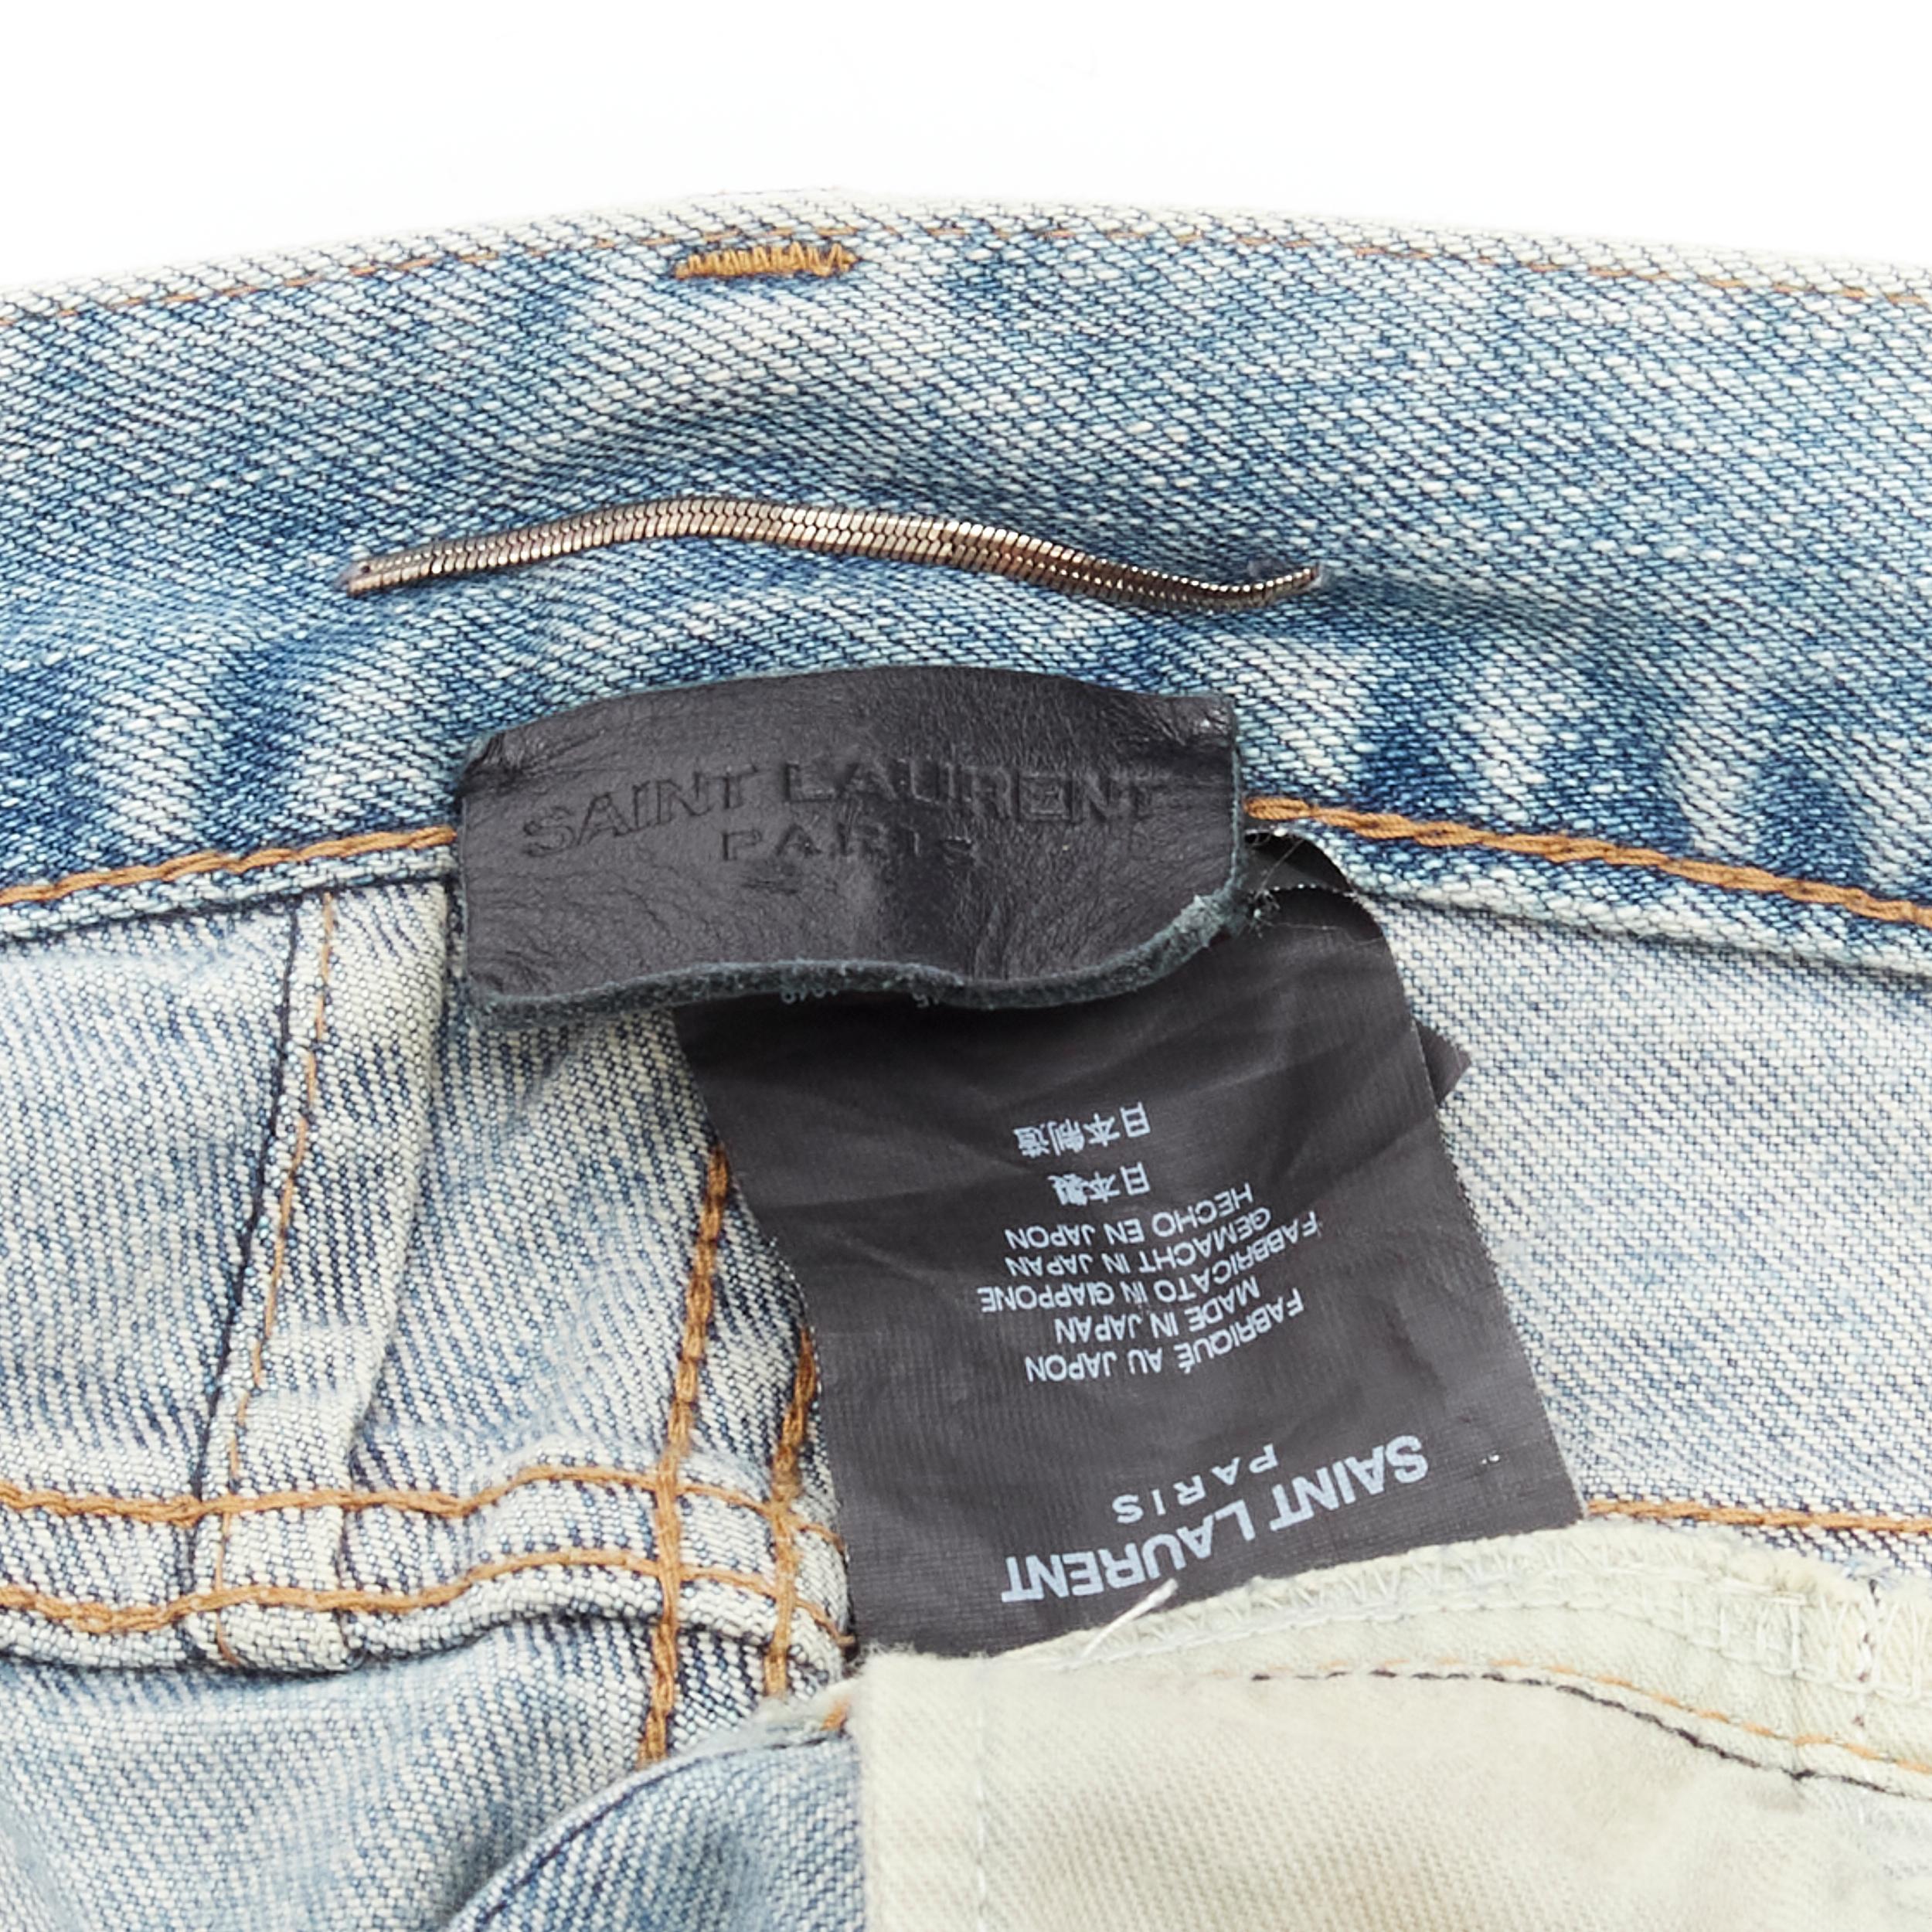 SAINT LAURENT Hedi Slimane Crash D02 M/SK-LW destroyed distressed blue jeans 30